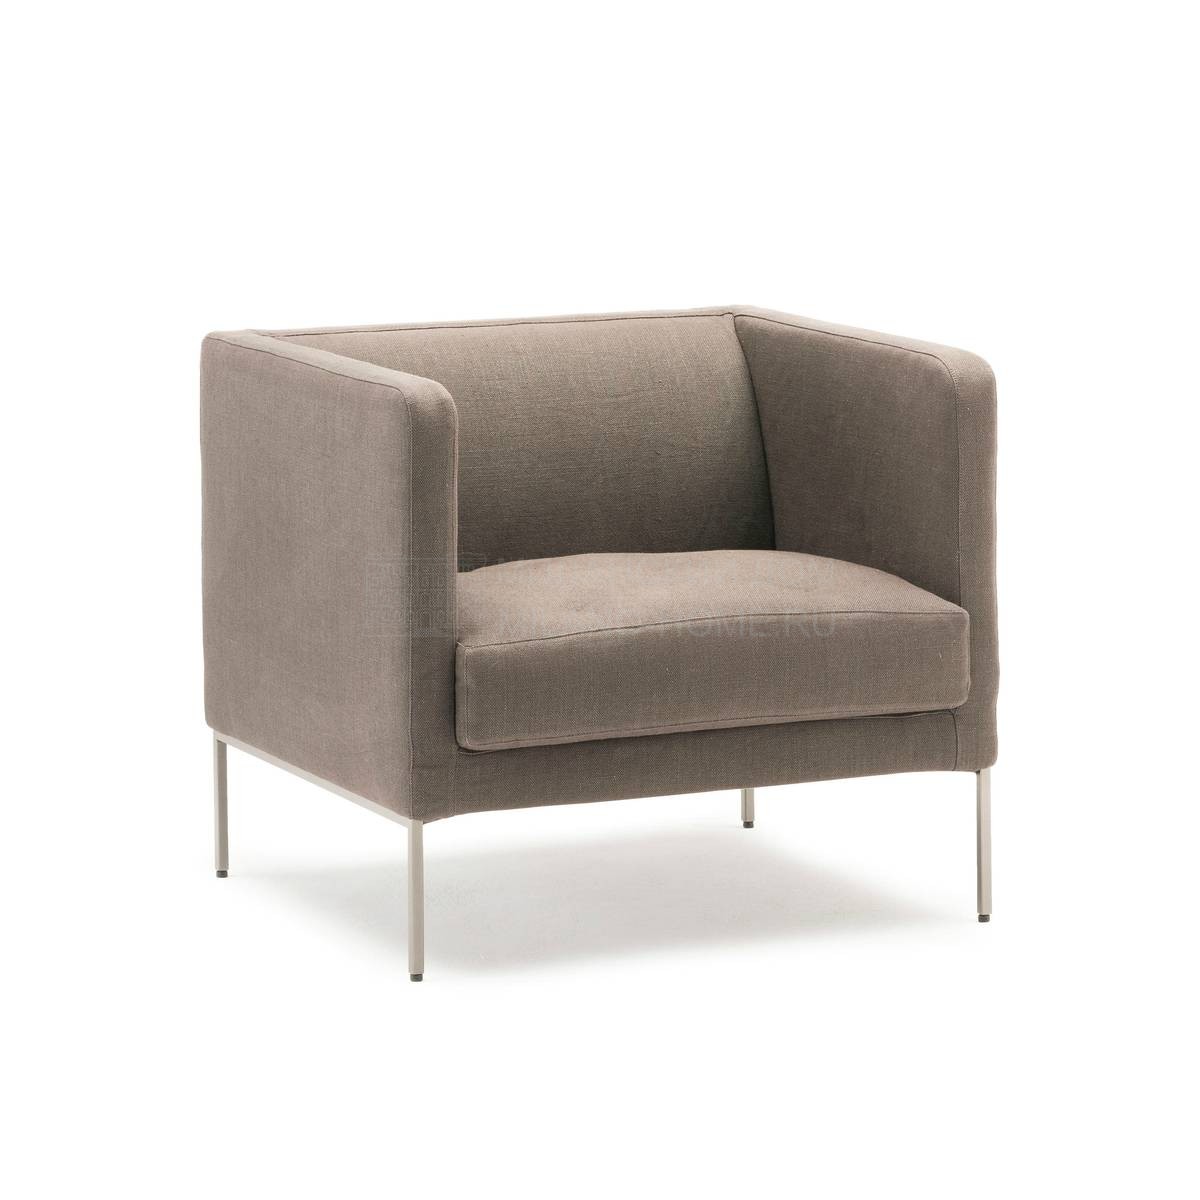 Кресло Easy Lipp armchair из Италии фабрики LIVING DIVANI